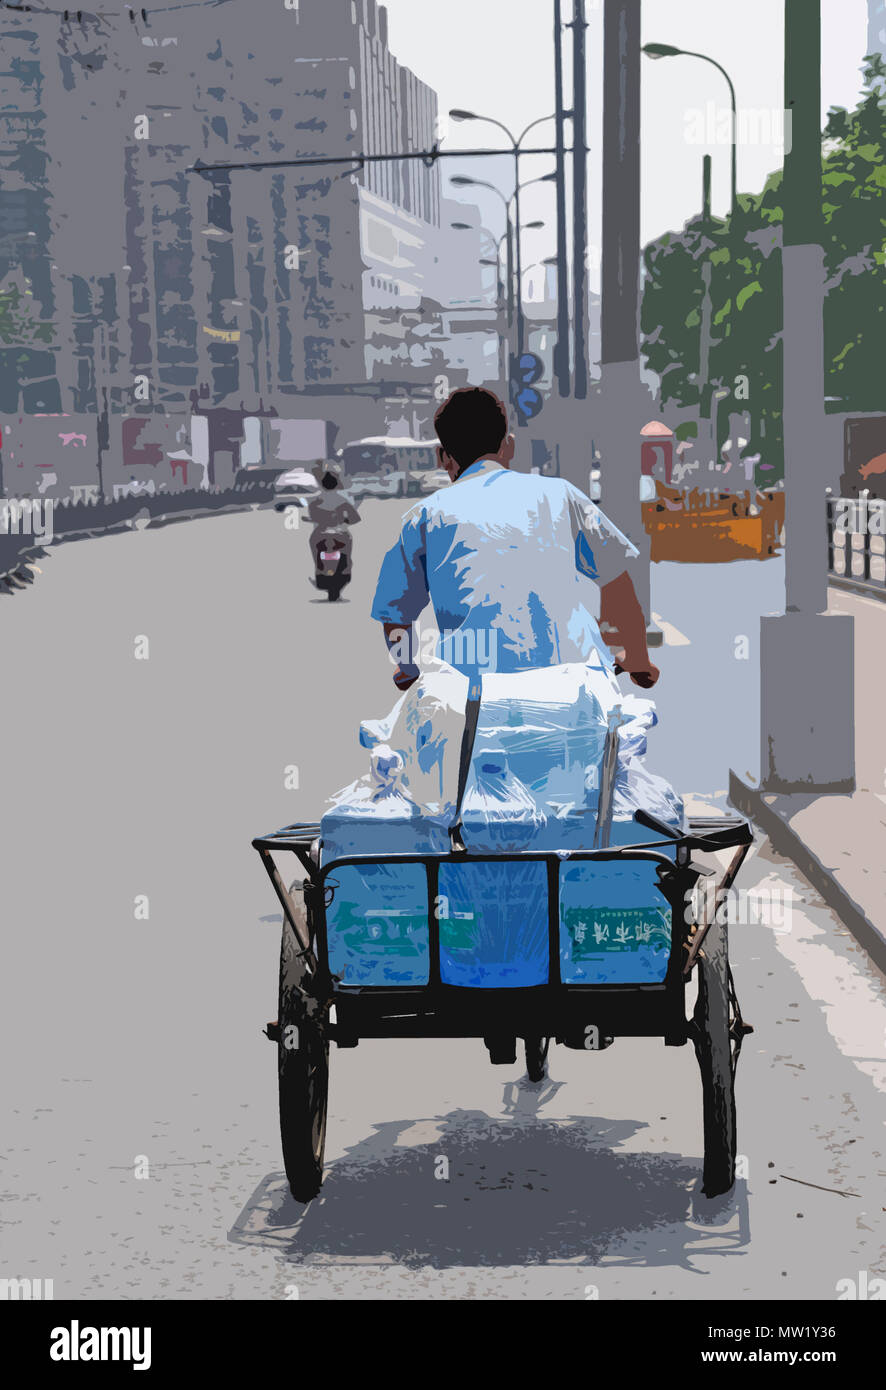 Scène de rue franche montrant vélo avec panier transportant une charge (rendu en PS, illustration), Shanghai, Chine Banque D'Images